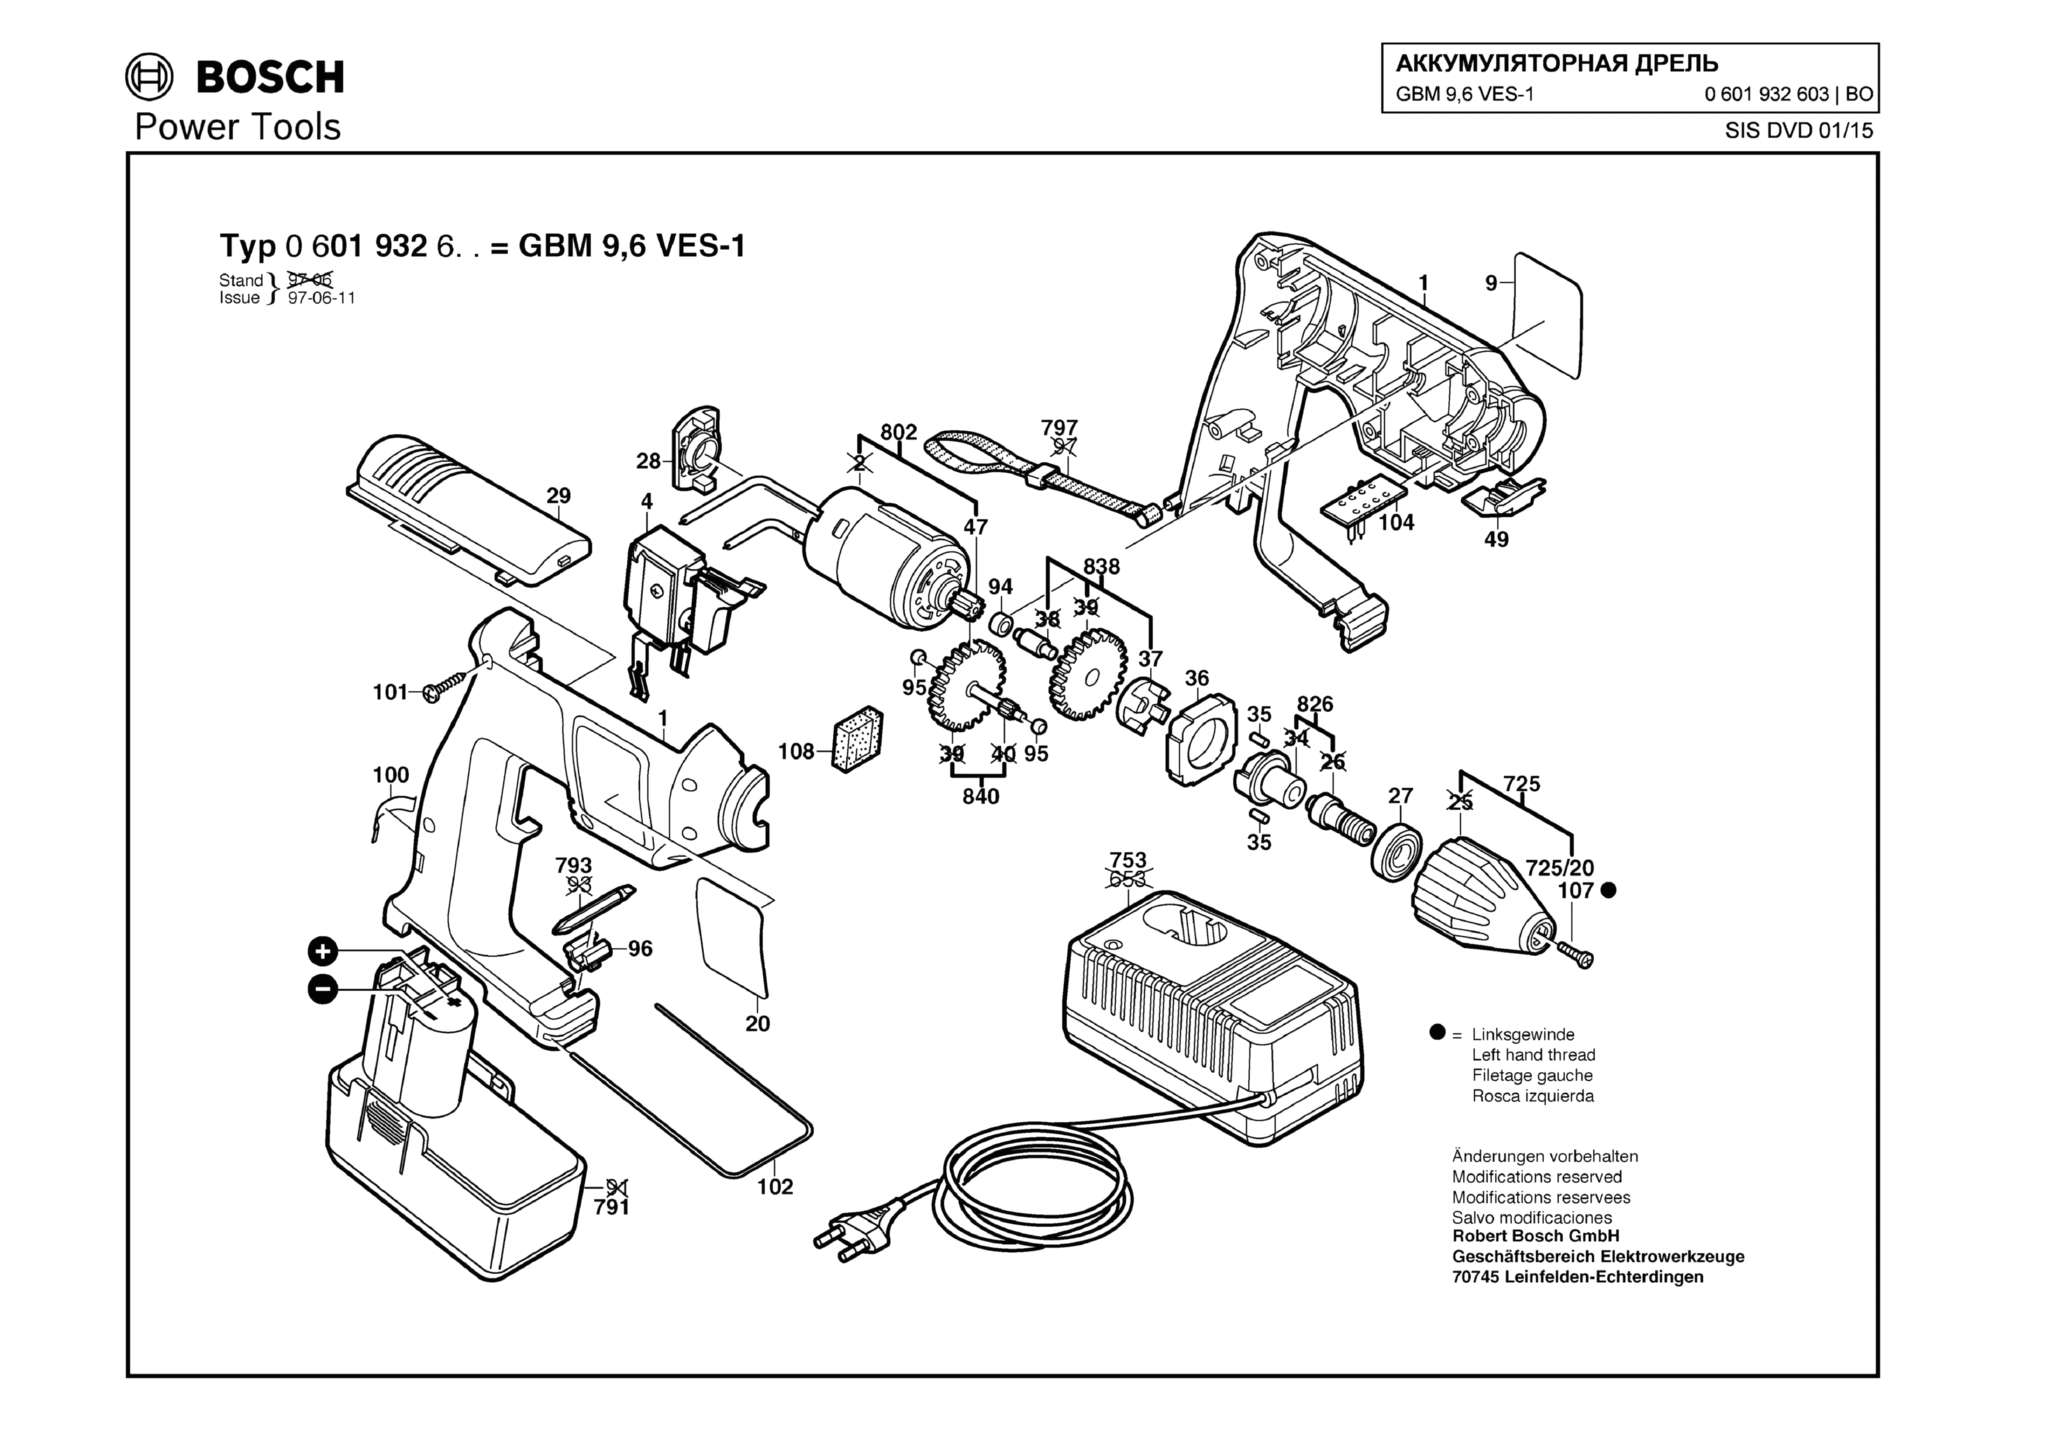 Запчасти, схема и деталировка Bosch GBM 9,6 VES-1 (ТИП 0601932603)